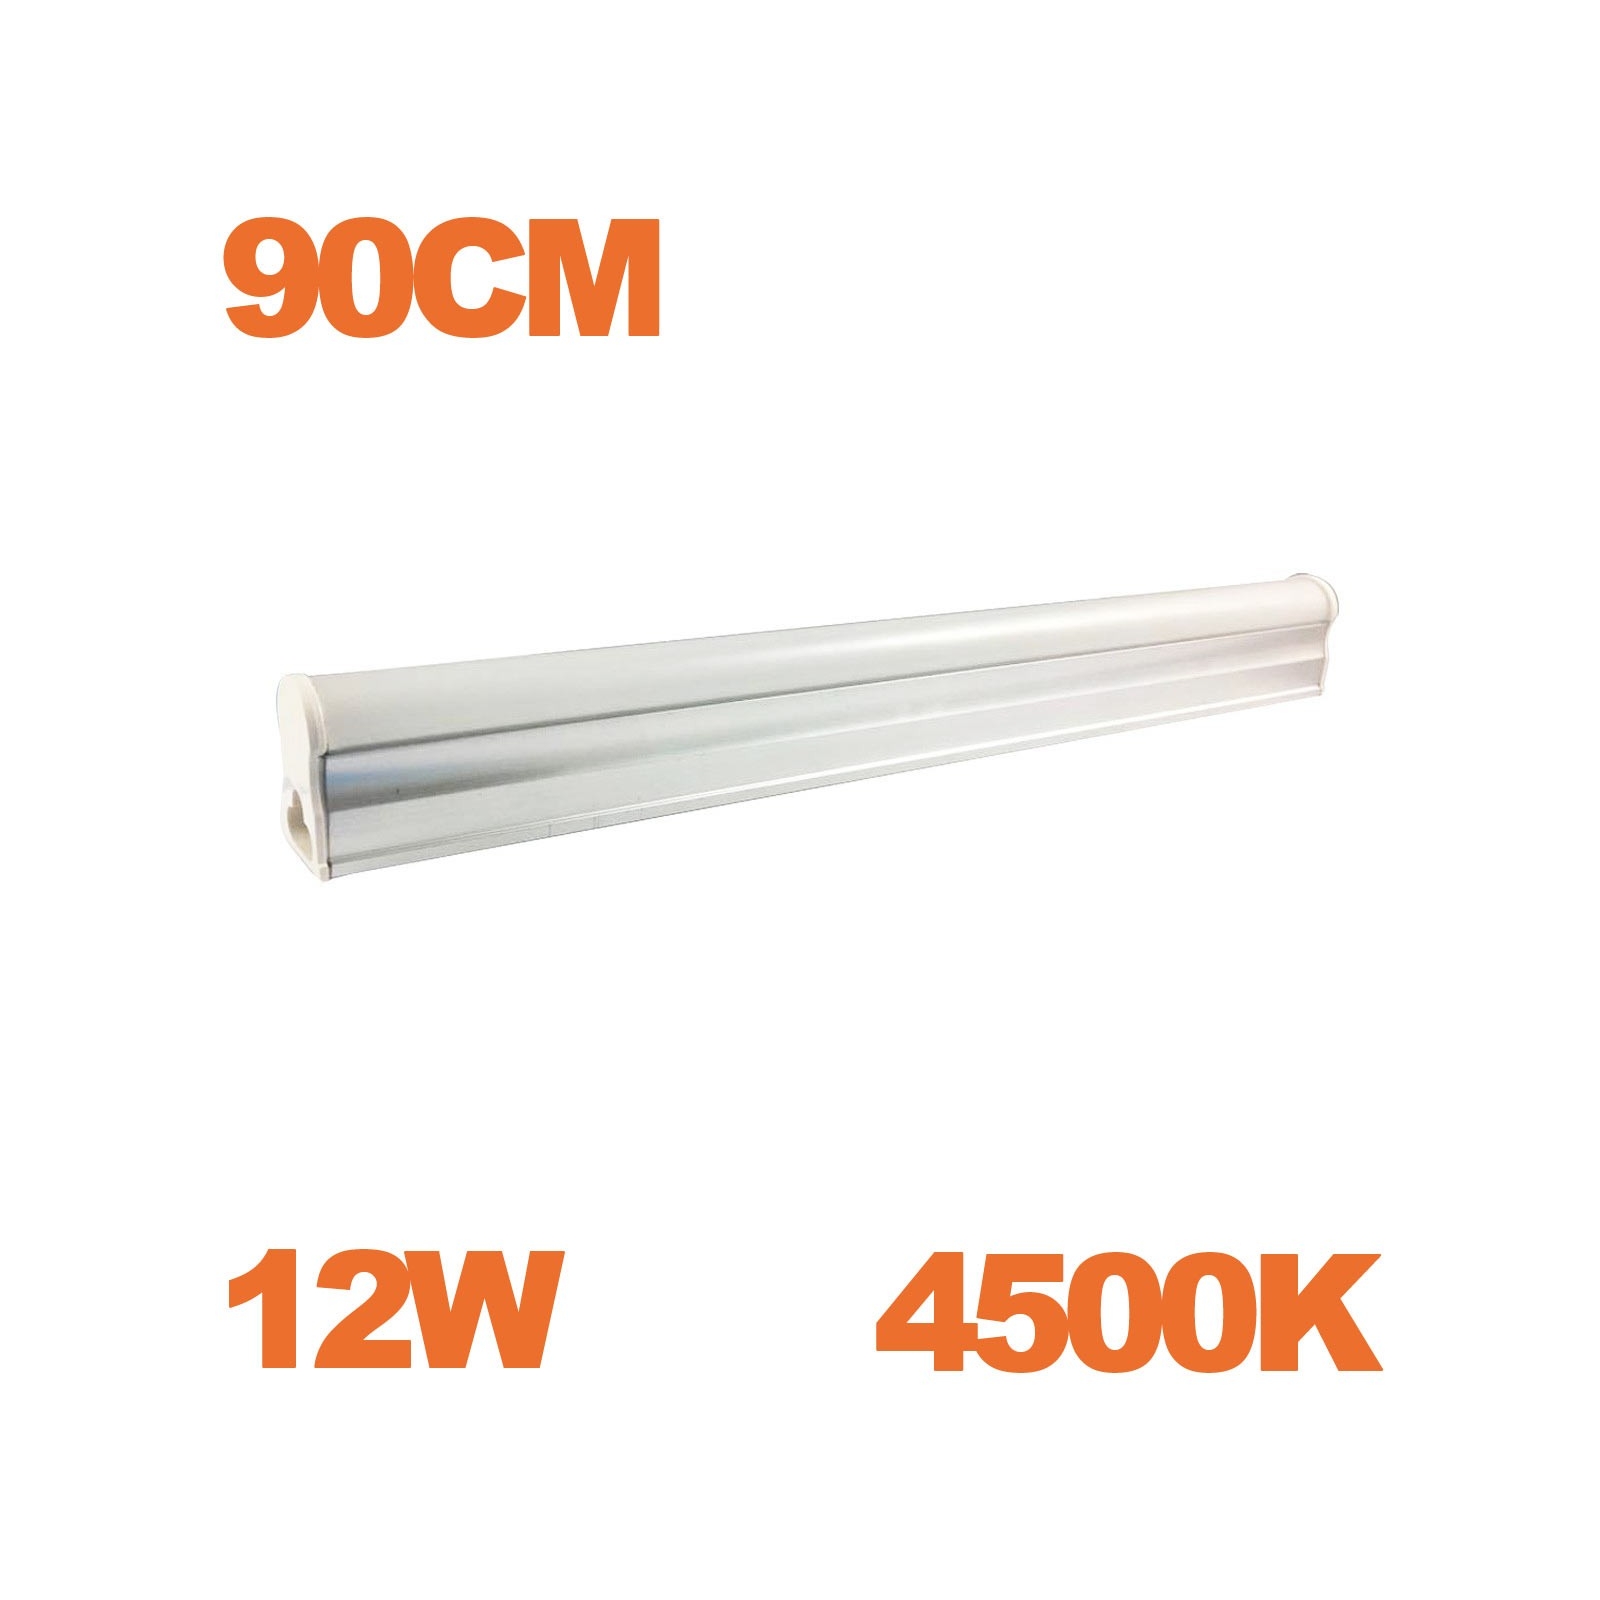 Tube LED T5 Puissance 12W Longueur 90cm Blanc Chaud 3000K